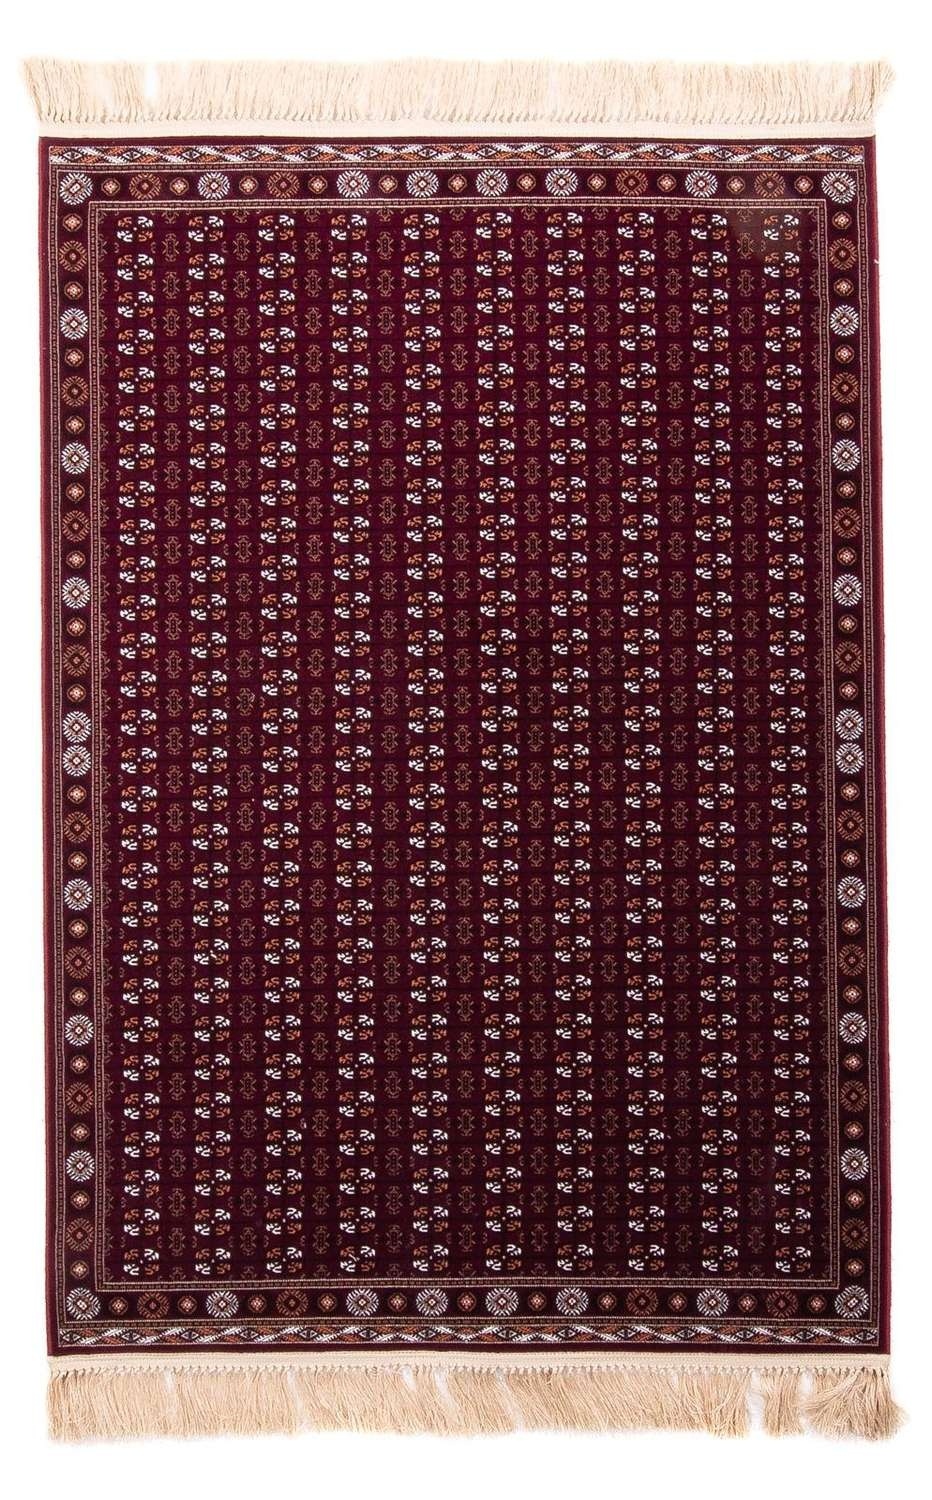 Morgenland Orientteppich - Afghan Mauri - dunkelrot - 100 x 80 cm - rechteckig